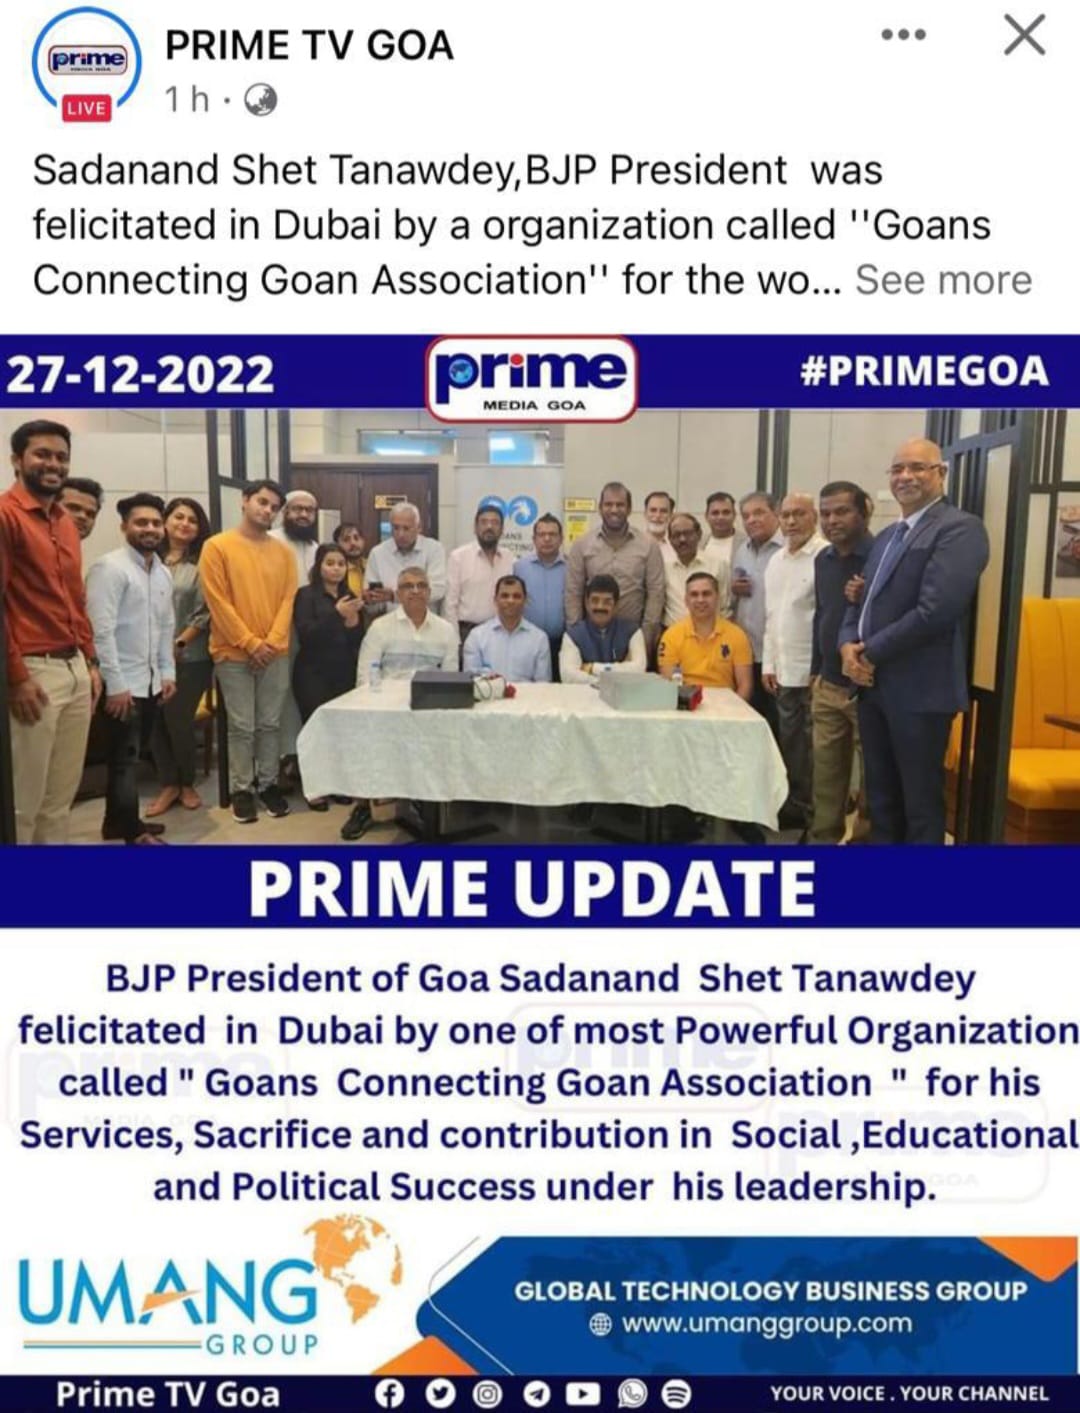  NEWS ON PRIME TV GOA : BJP President of Goa Sadanand Shet Tanawdey felicitaded in Dubai